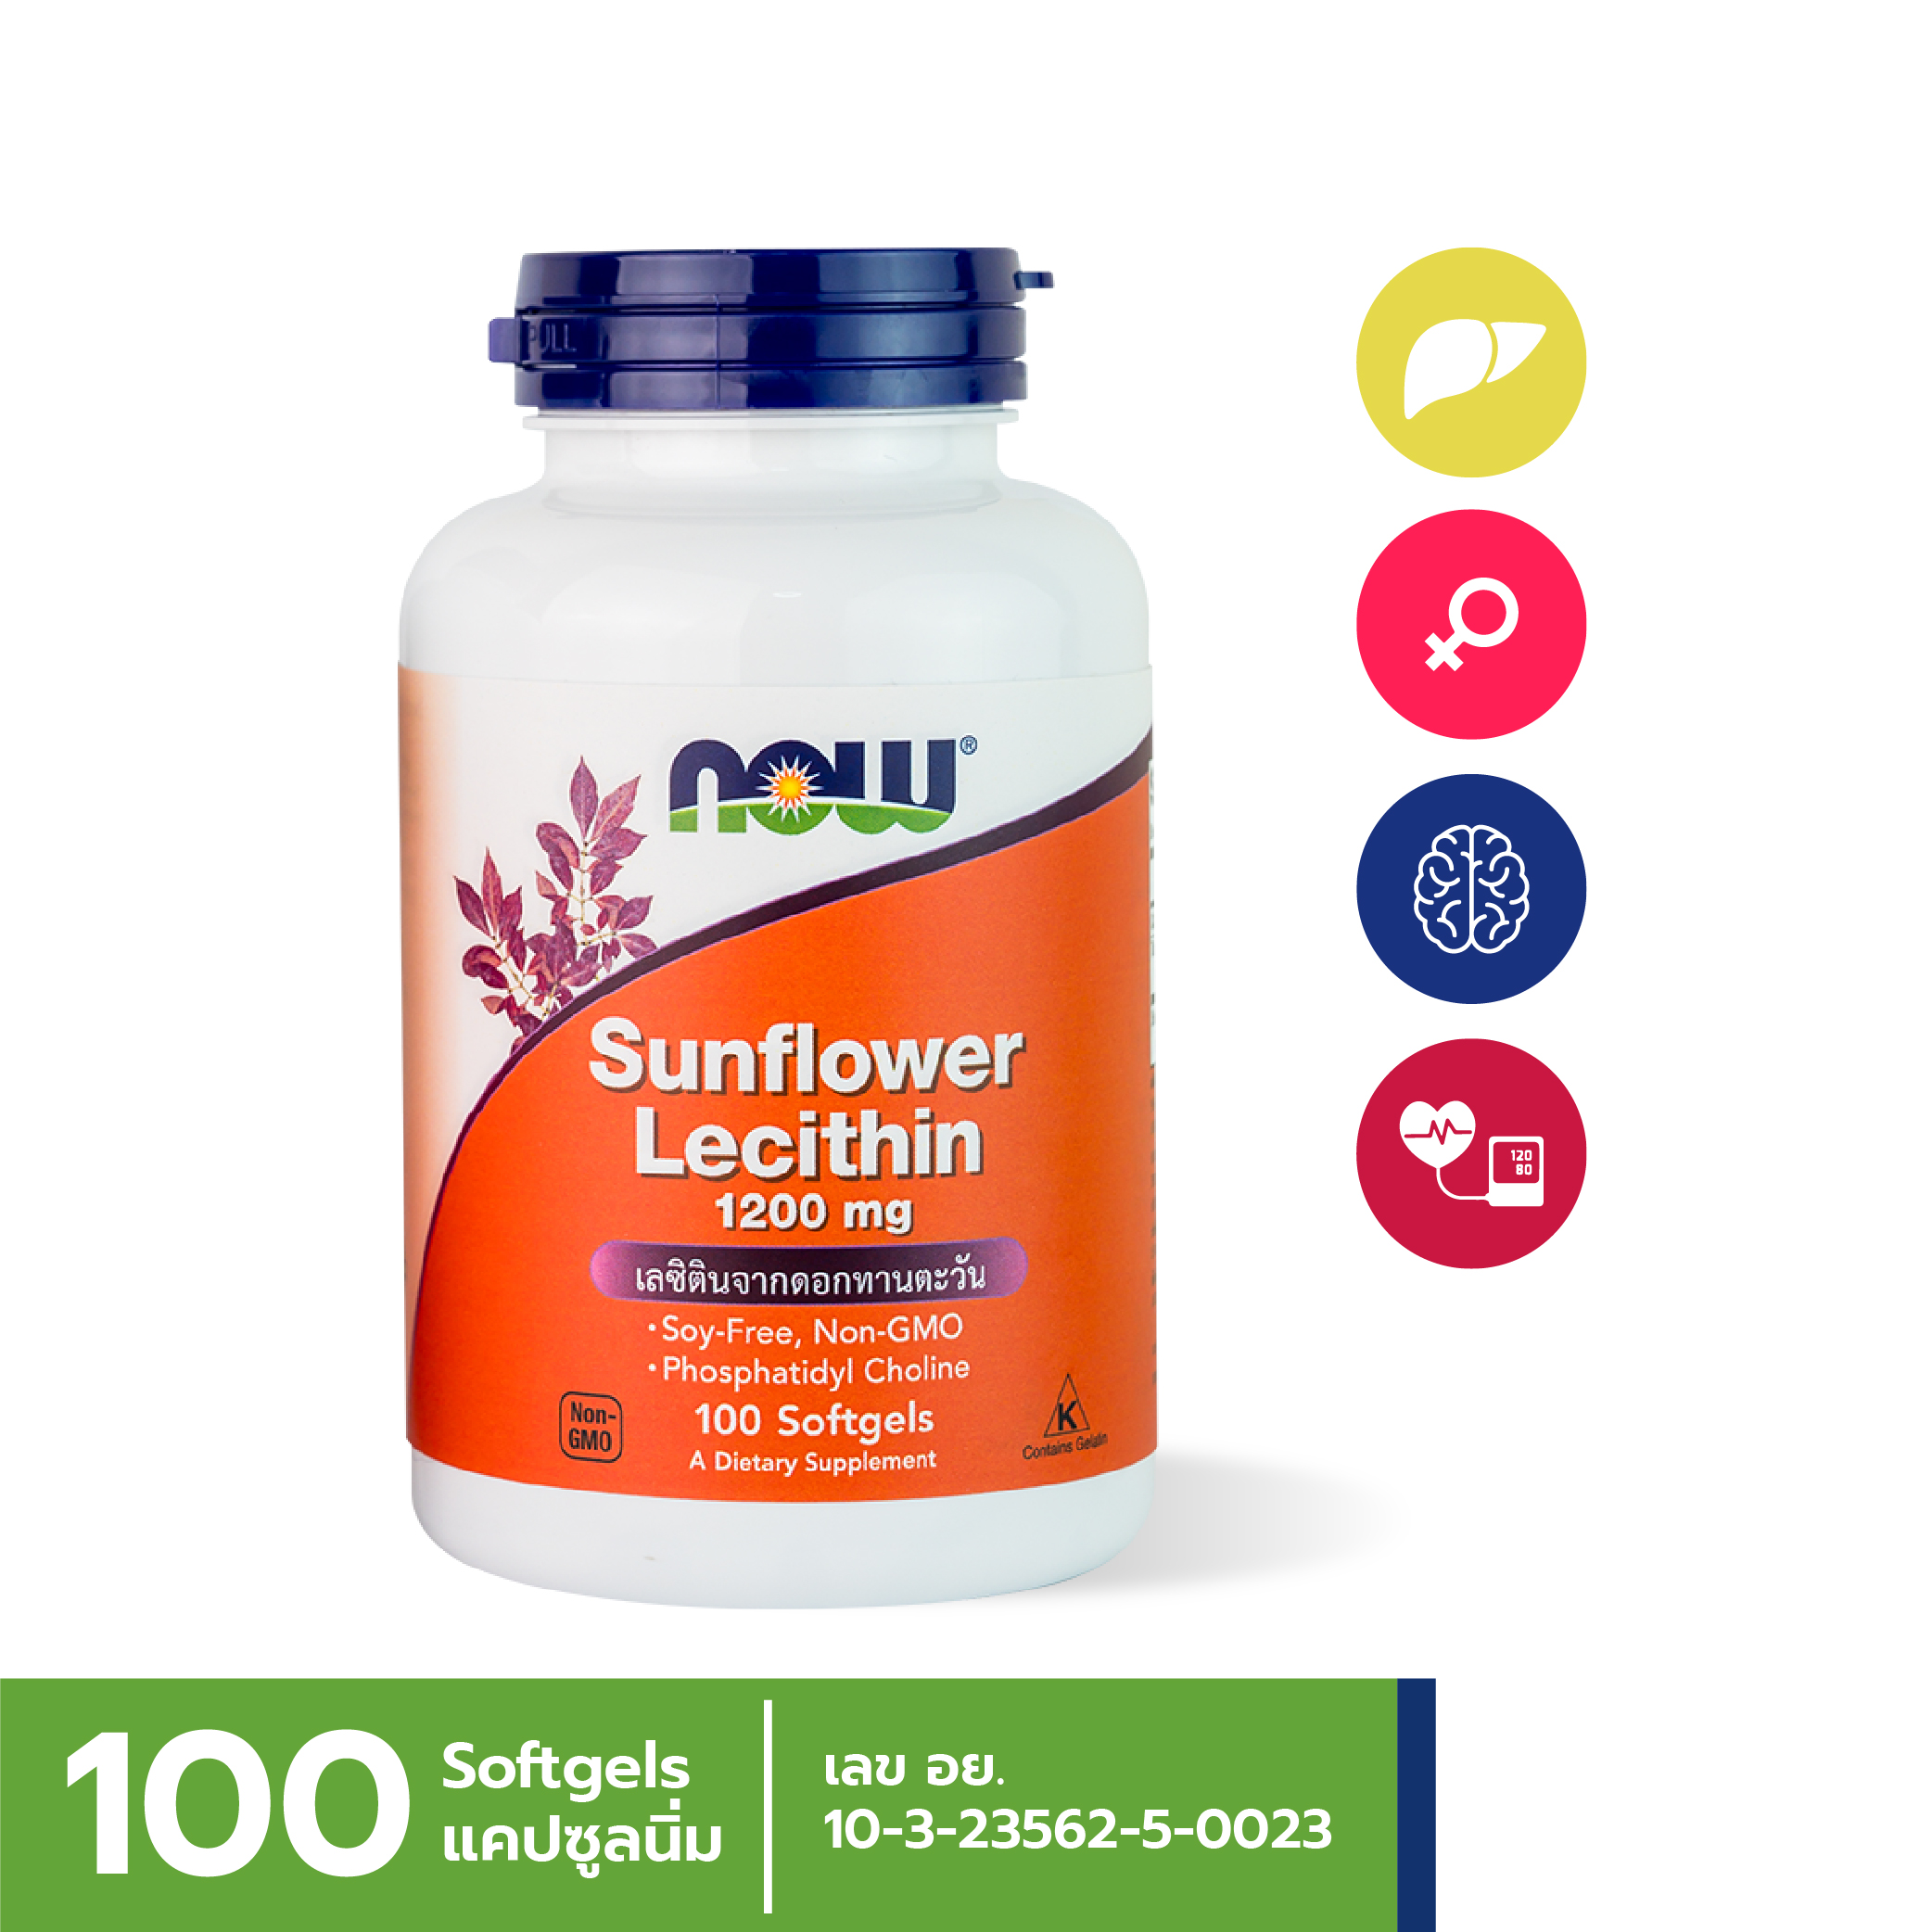 [ลูกค้าใหม่กรอก FORYOU89 ลดเลย 89.-] NOW Sunflower Lecithin 1200 mg 100 Softgels